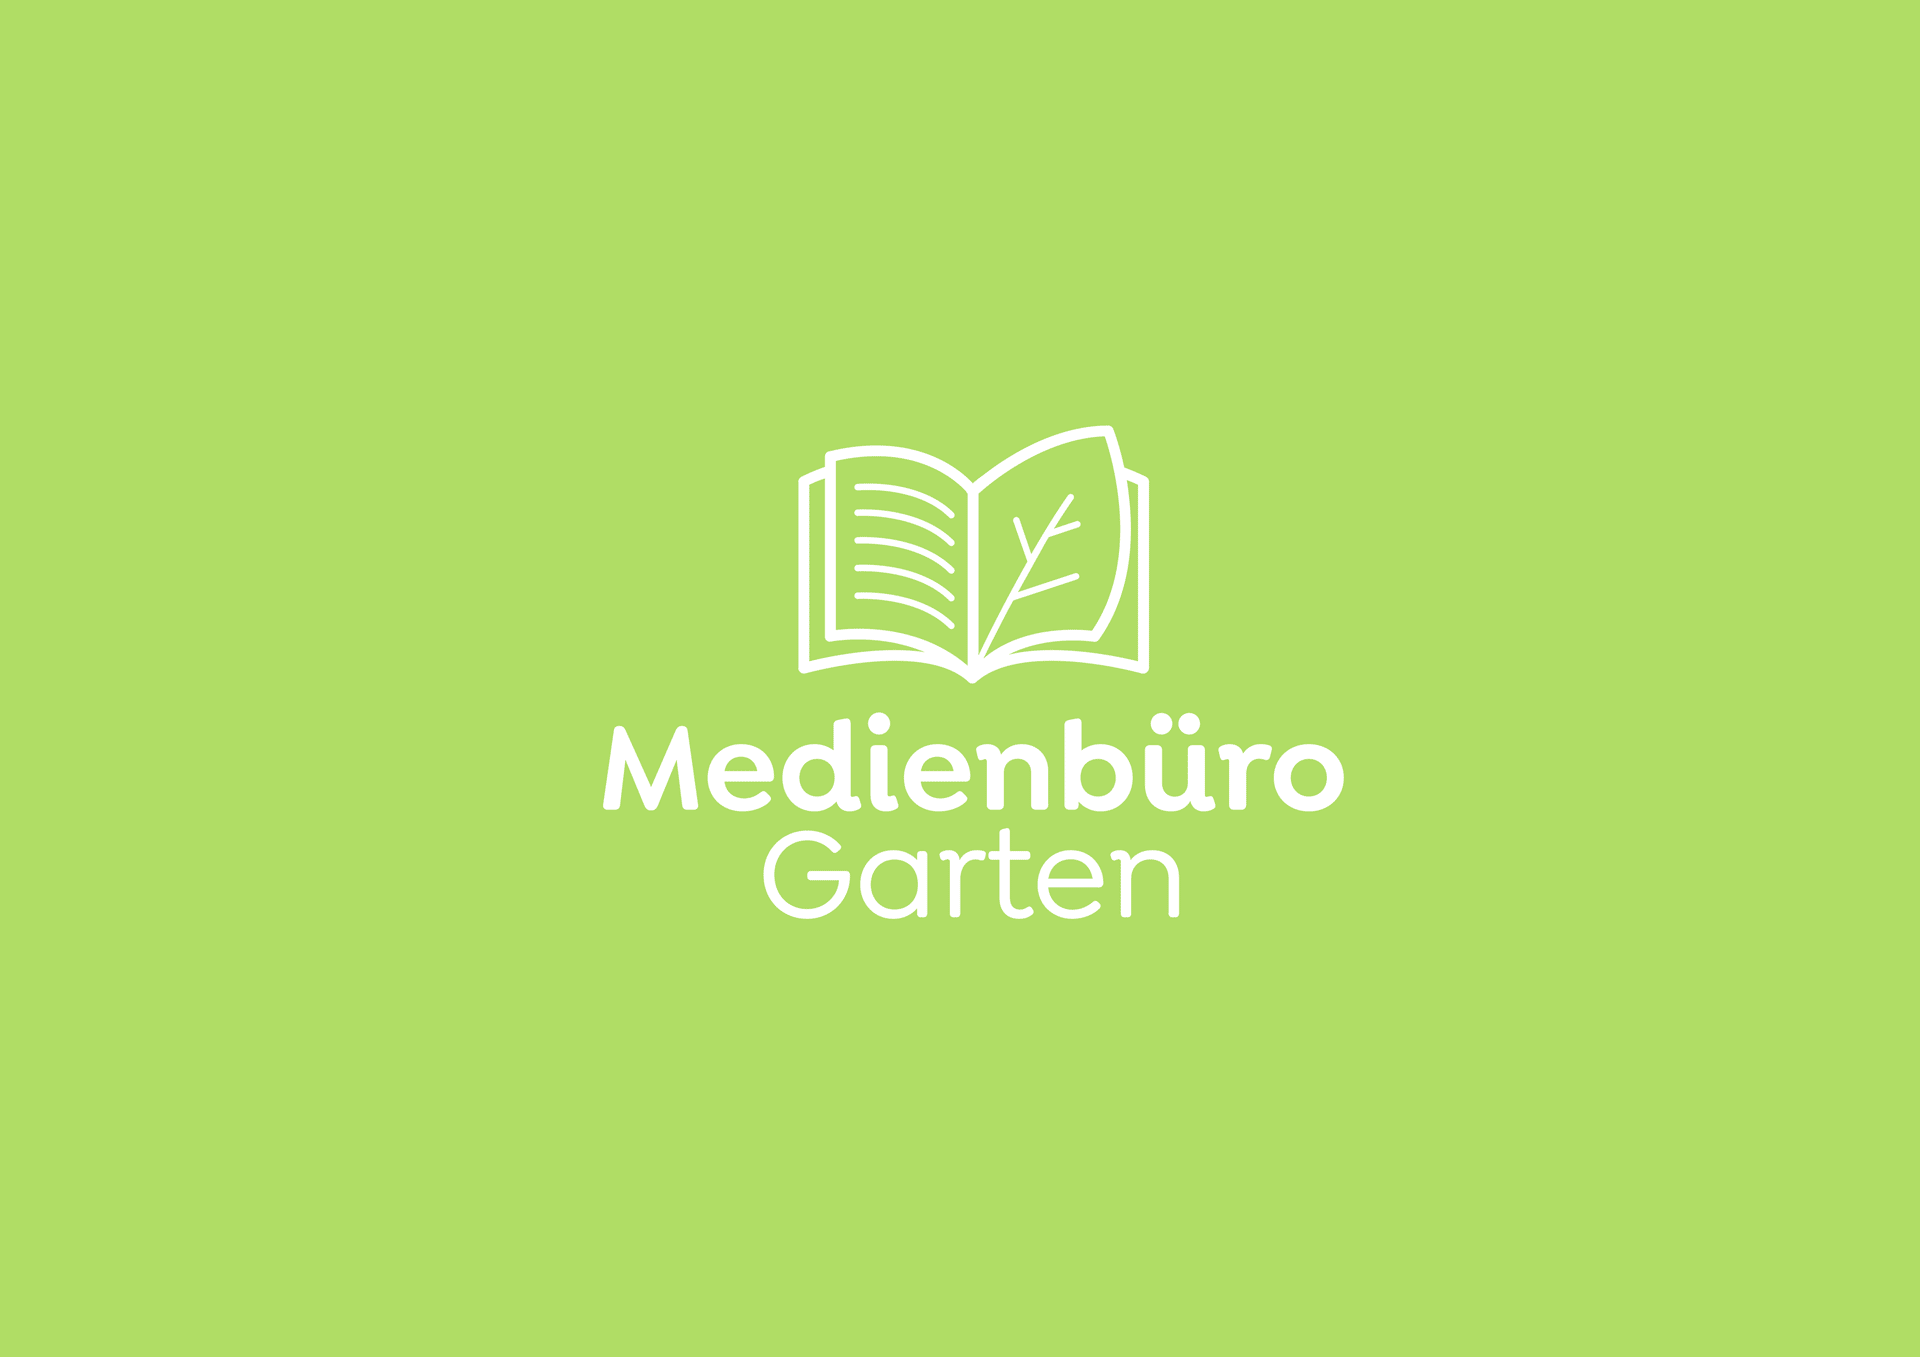 Medienbuero-Garten_081120_web_01_FINAL